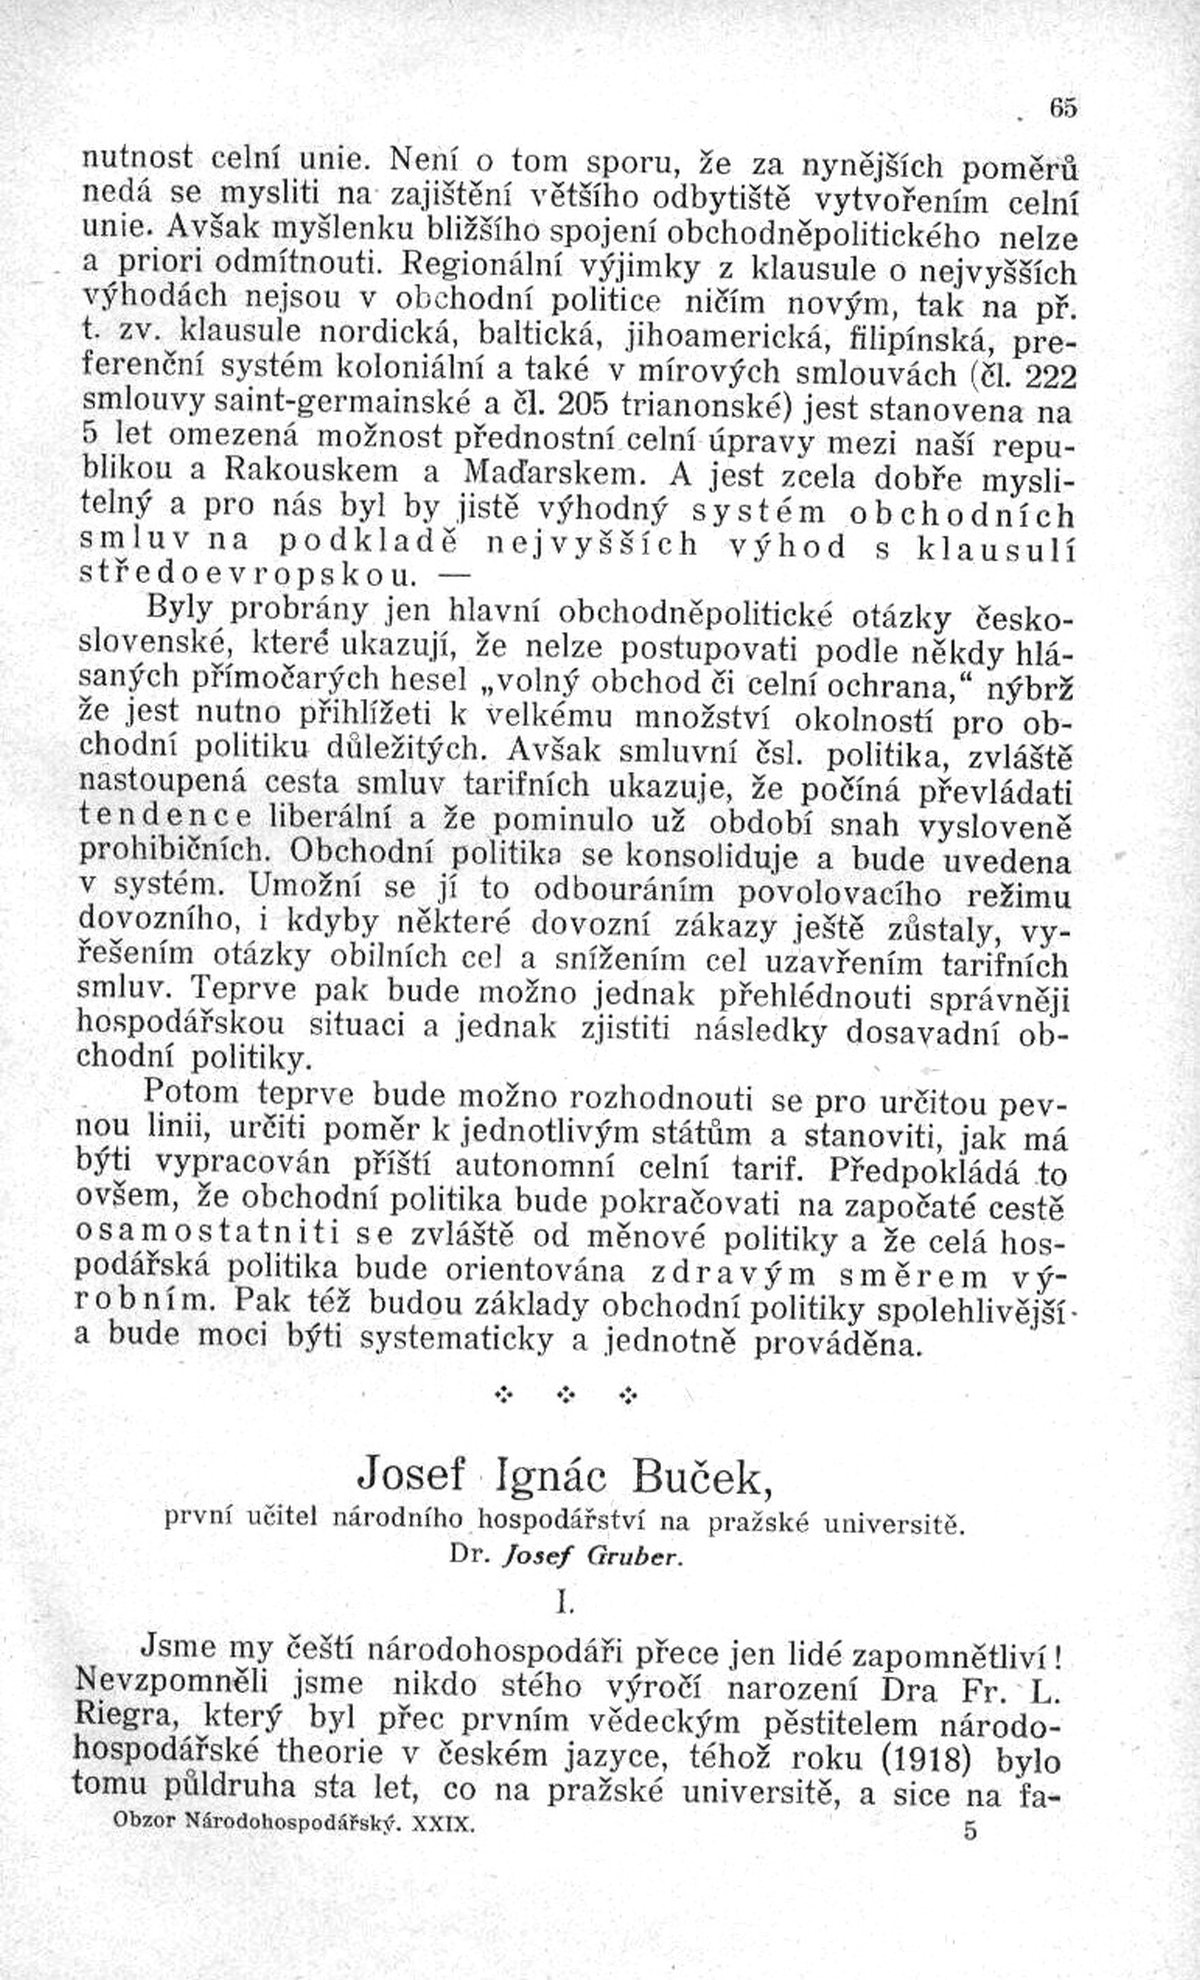 Josef Ignác Buček